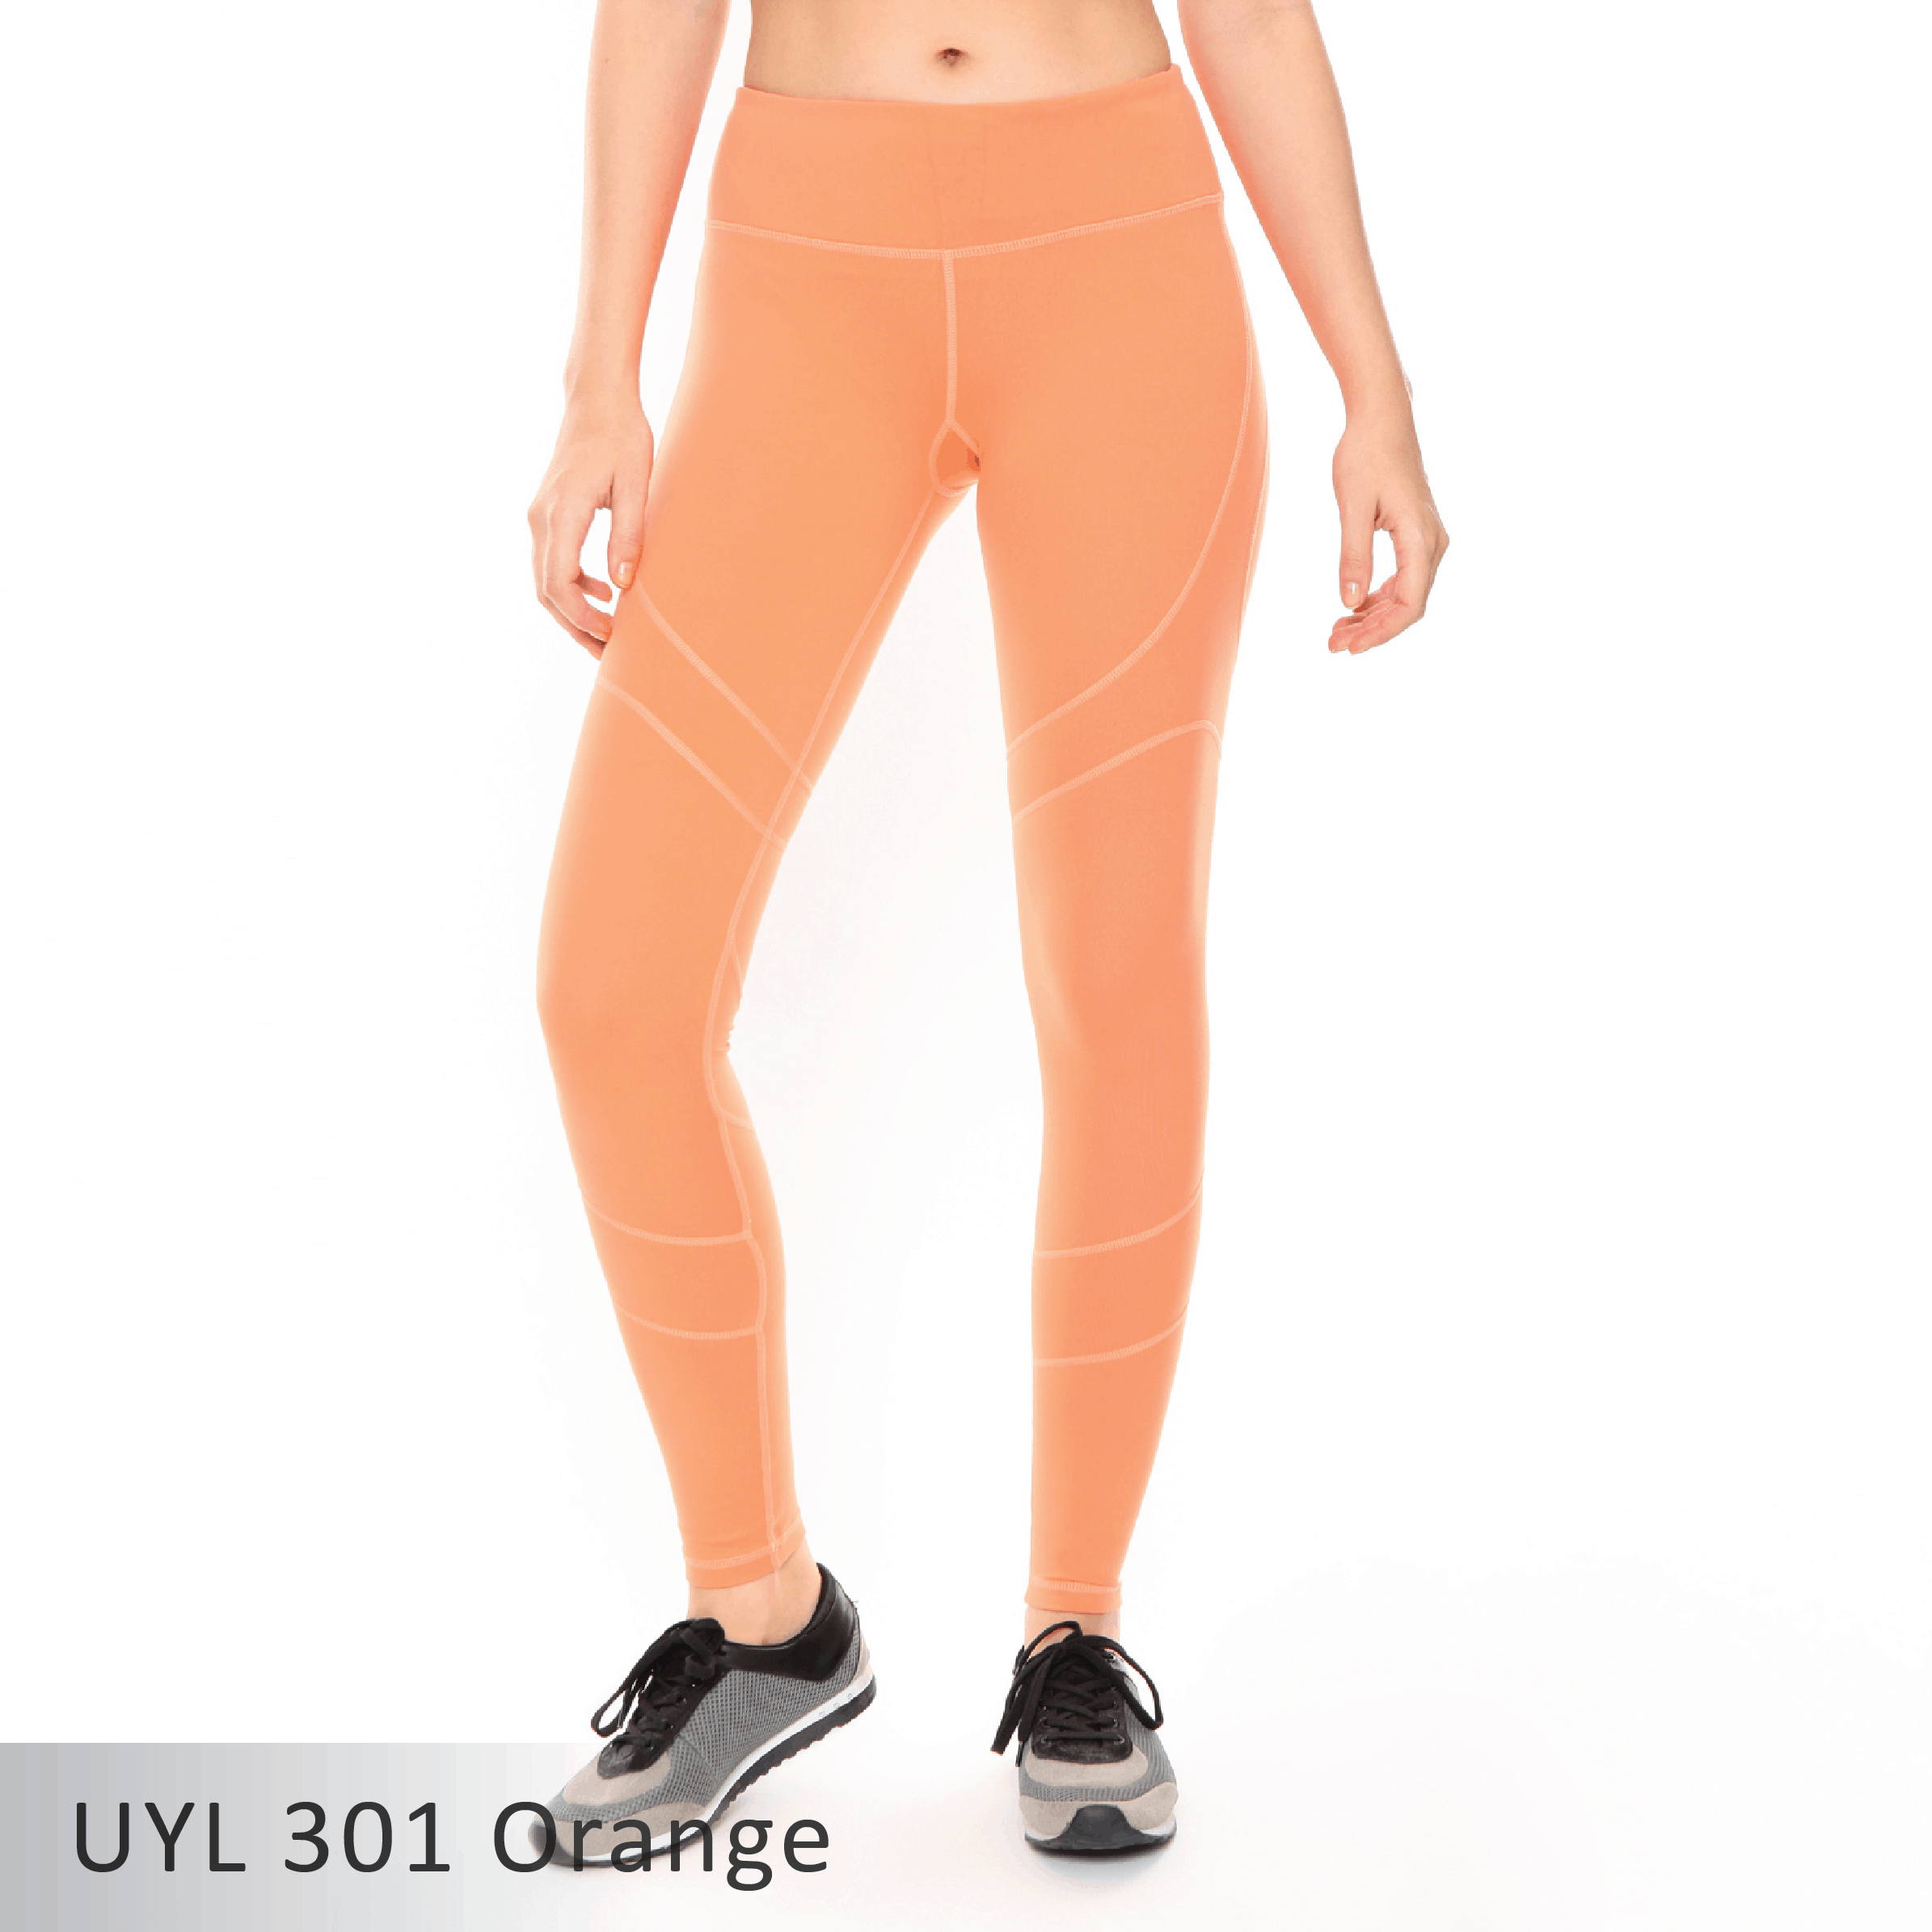 UYL 301 orange